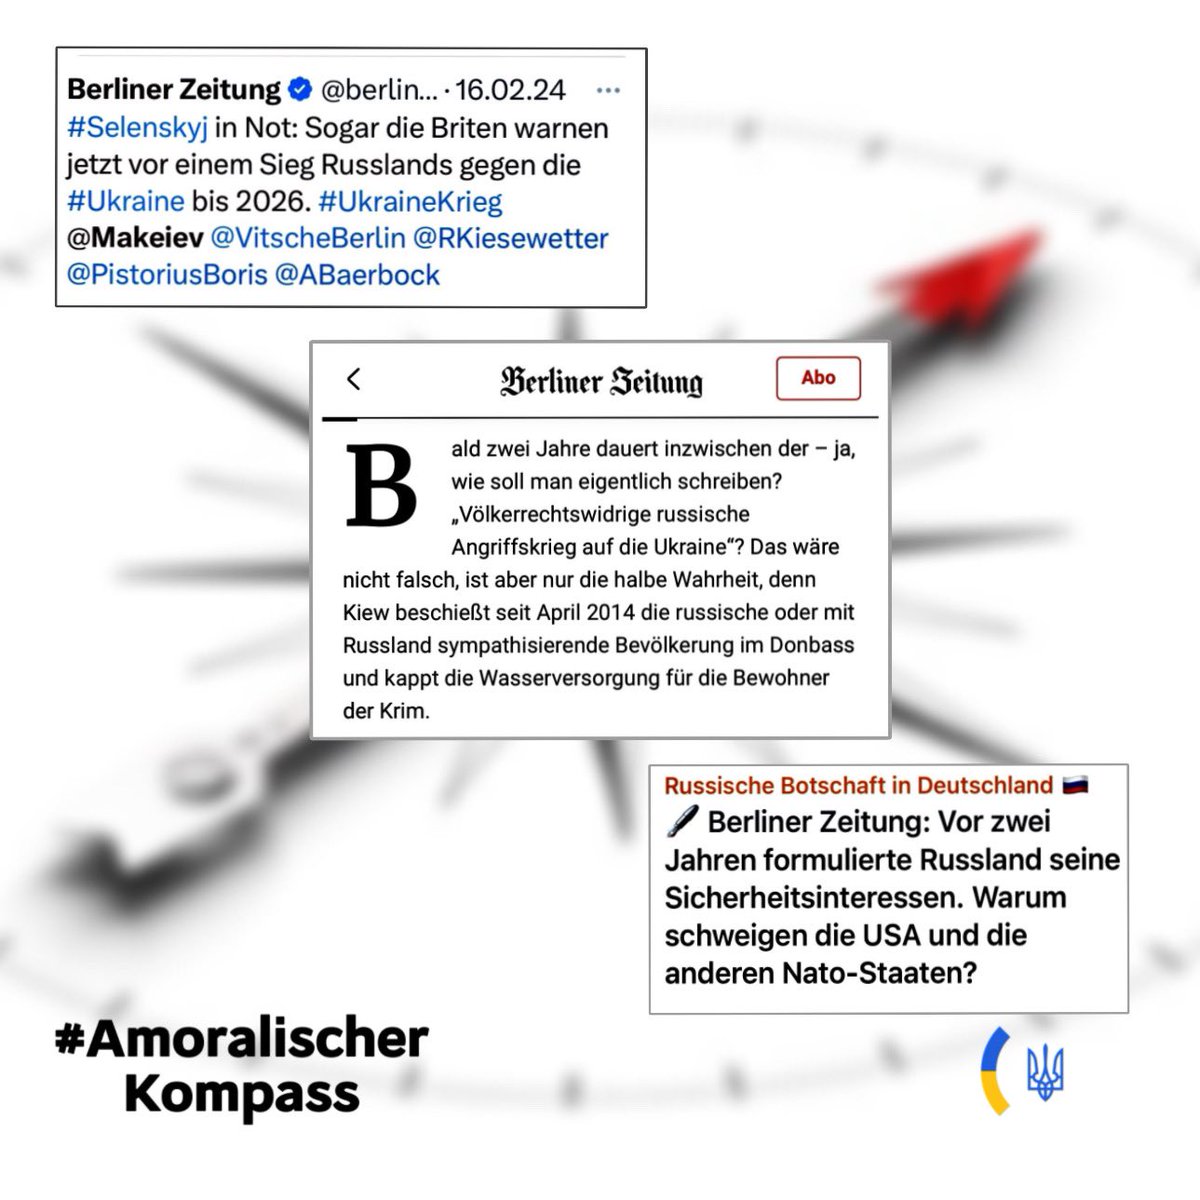 Regelmäßig markiert mich @berlinerzeitung in Posts mit Artikeln, die selbst die russische Botschaft gerne teilt — so sehr werden dort Realität und Wahrheit über den russischen Angriffskrieg verdreht. Ist @berlinerzeitung das neue Radio Moskau? Thread. /1 #AmoralischerKompass